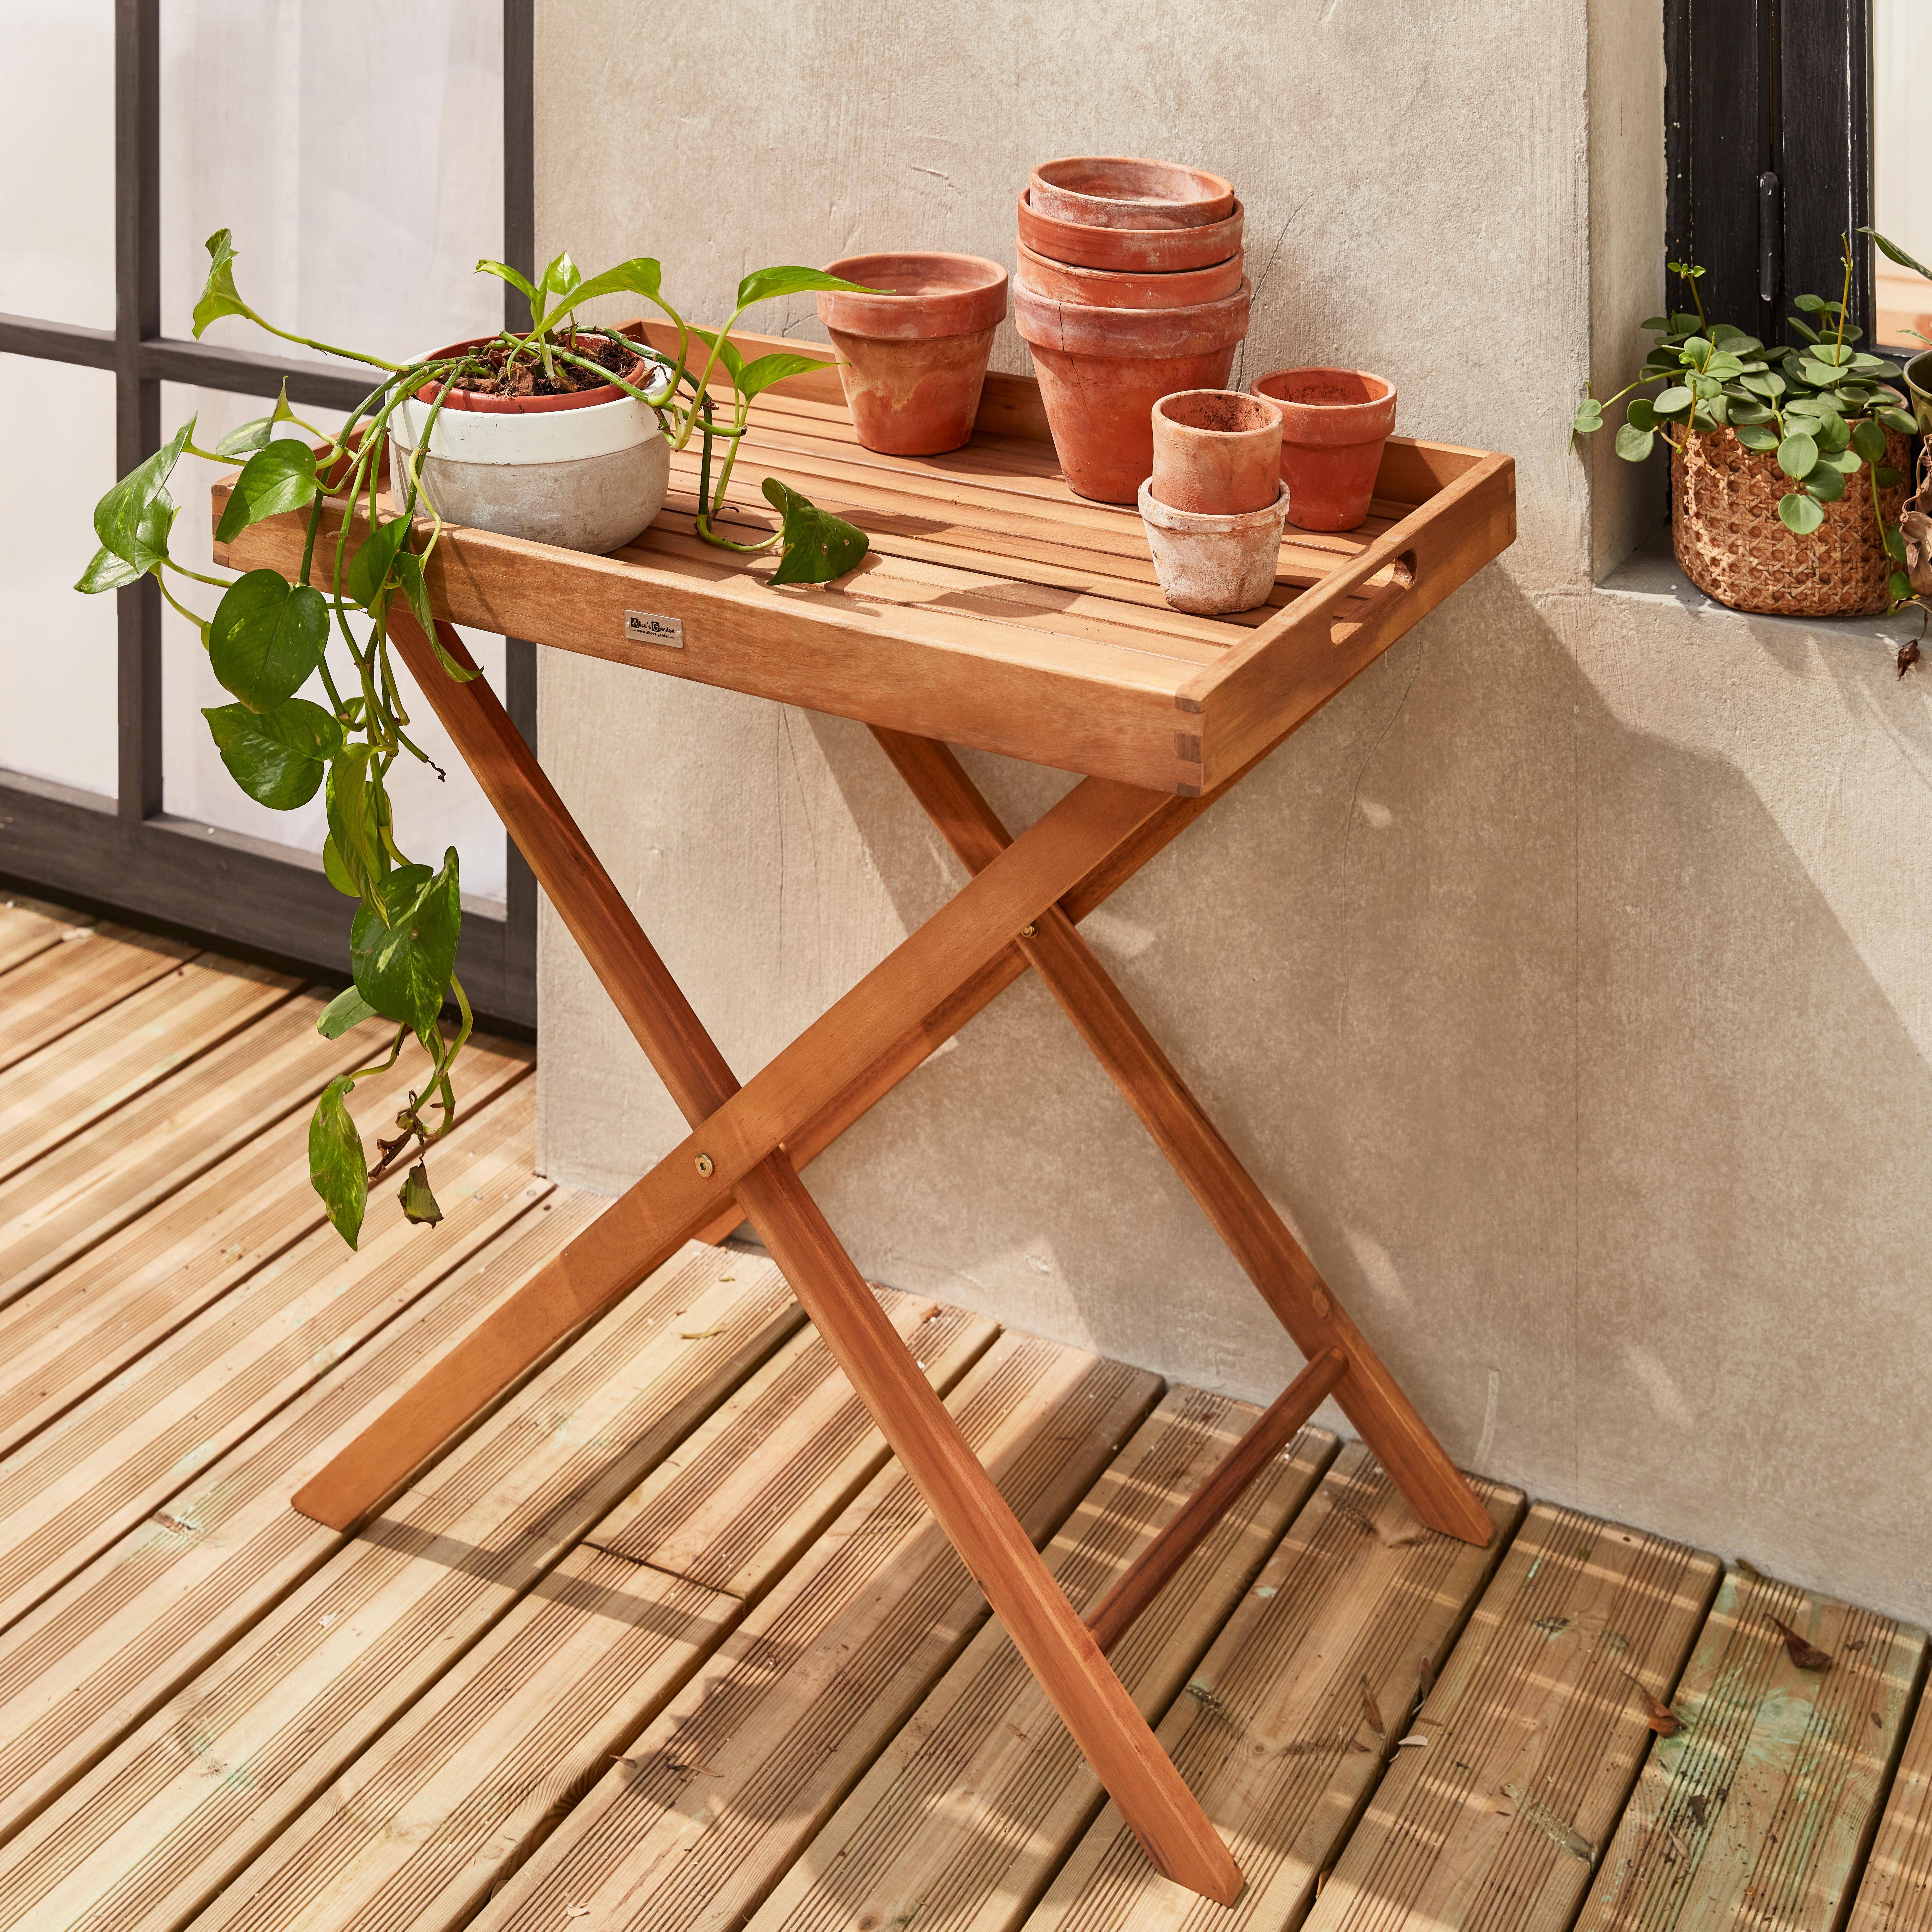 Tavolino da giardino, in legno, dimensioni: 68x44cm - modello: Murcia - Ripiano rimovibile su supporto, tavolo complementare, tavolino basso Photo1